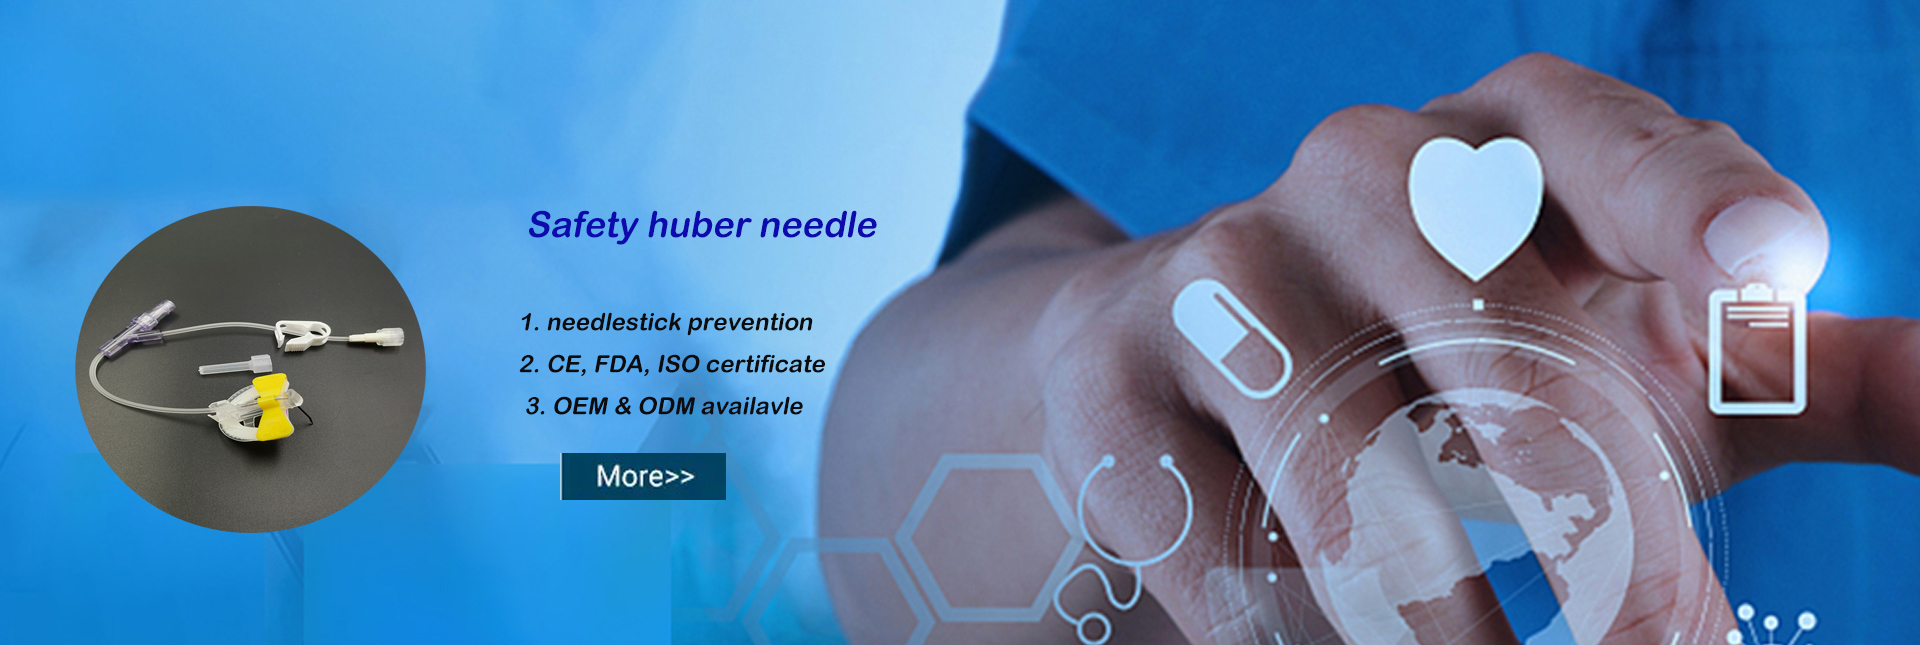 Safety huber needle